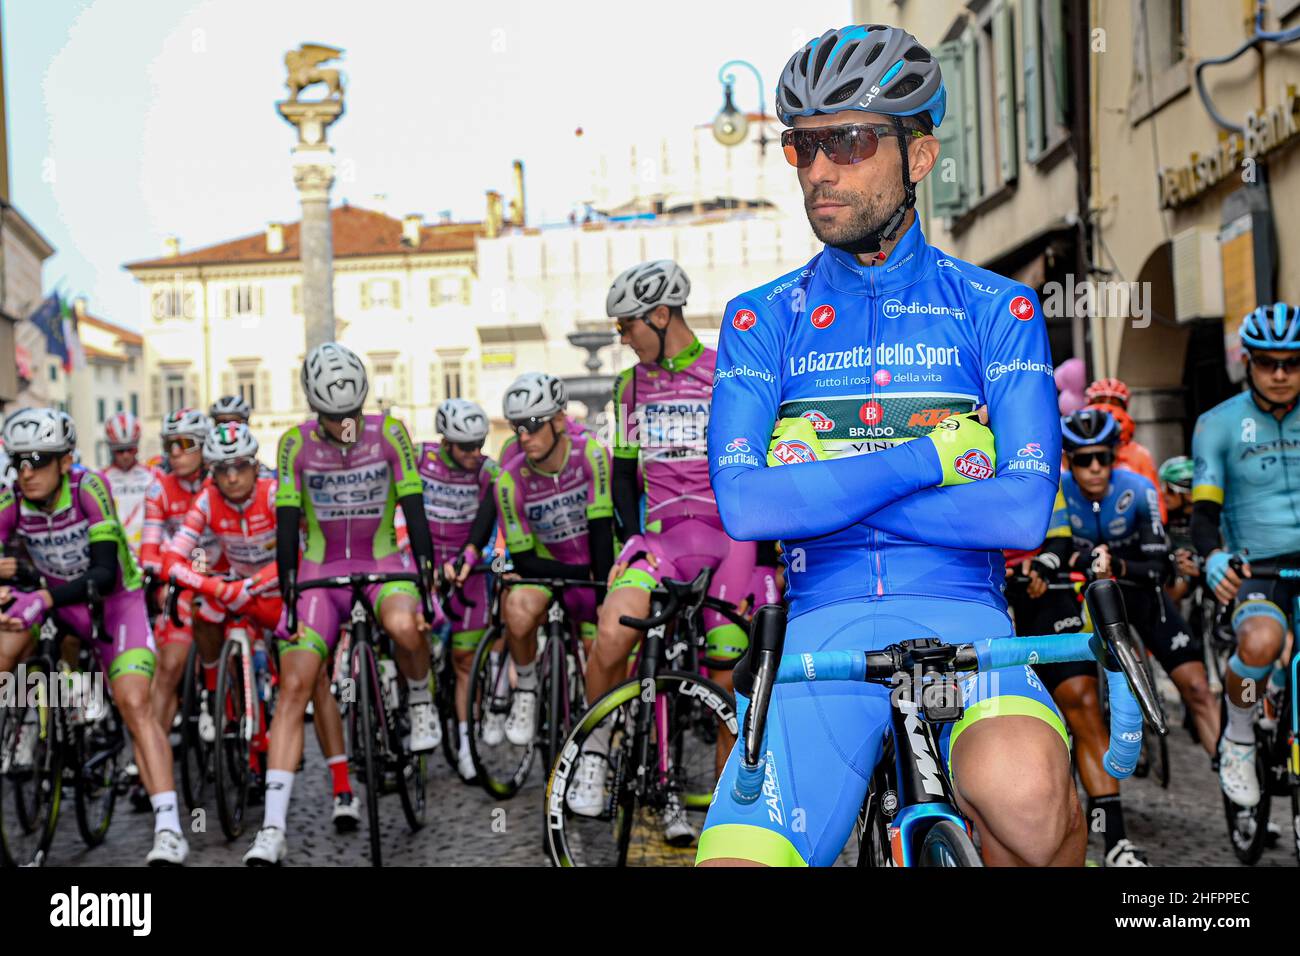 Gian Mattia D'Alberto/LaPresse 20 ottobre 2020 Italia Sport Cycling giro d'Italia 2020 - edizione 103th - Stage 16 - da Udine a San Daniele del Friuli nella foto: Giovanni Visconti (Vini Zabu' - BRADO - KTM) Foto Stock